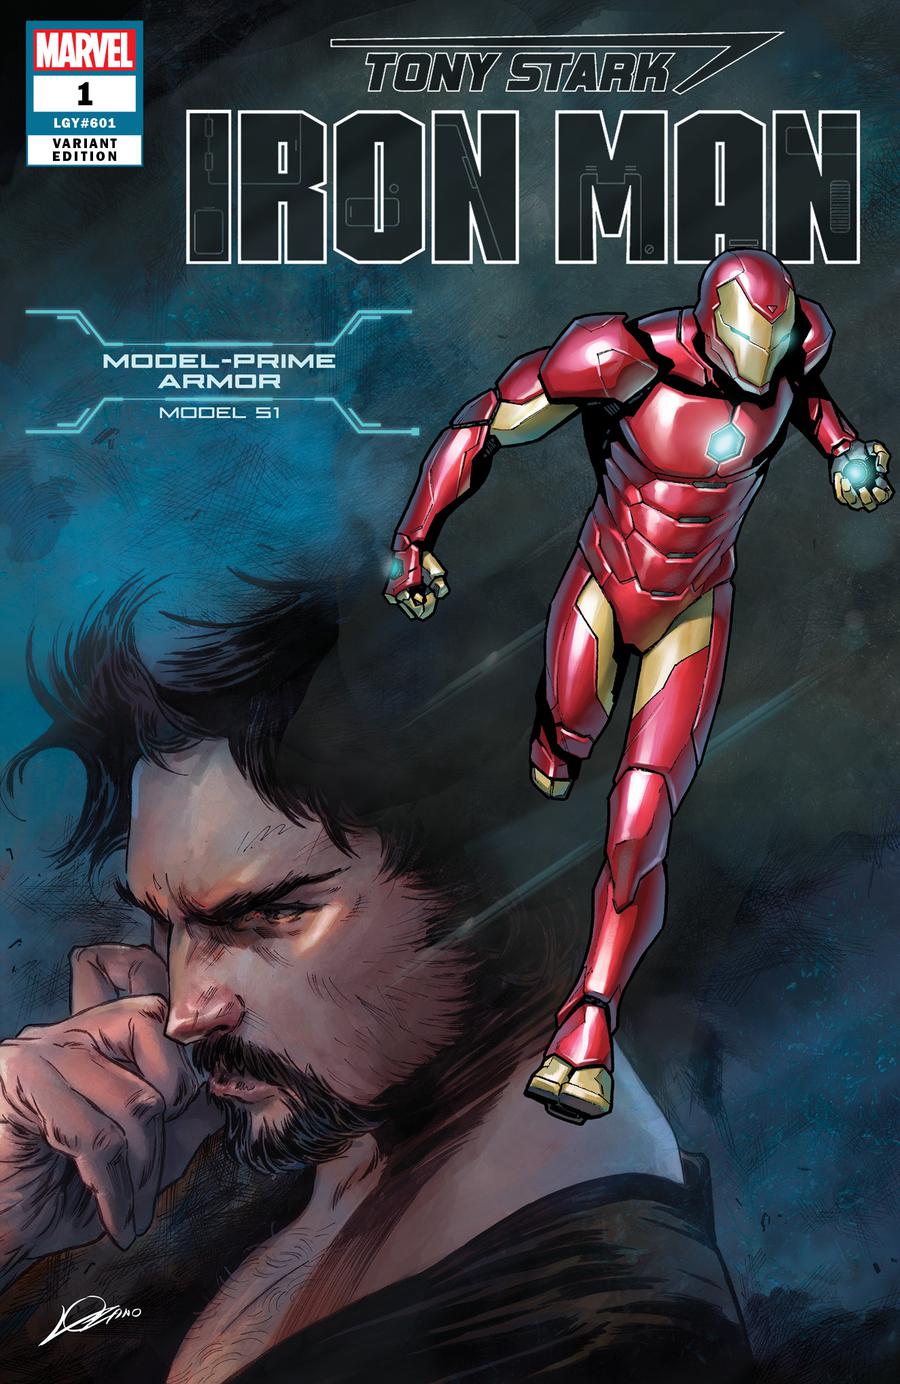 Tony Stark Iron Man #1 Cover L Variant Alexander Lozano & Valerio Schiti Model 51 Model-Prime Armor Cover